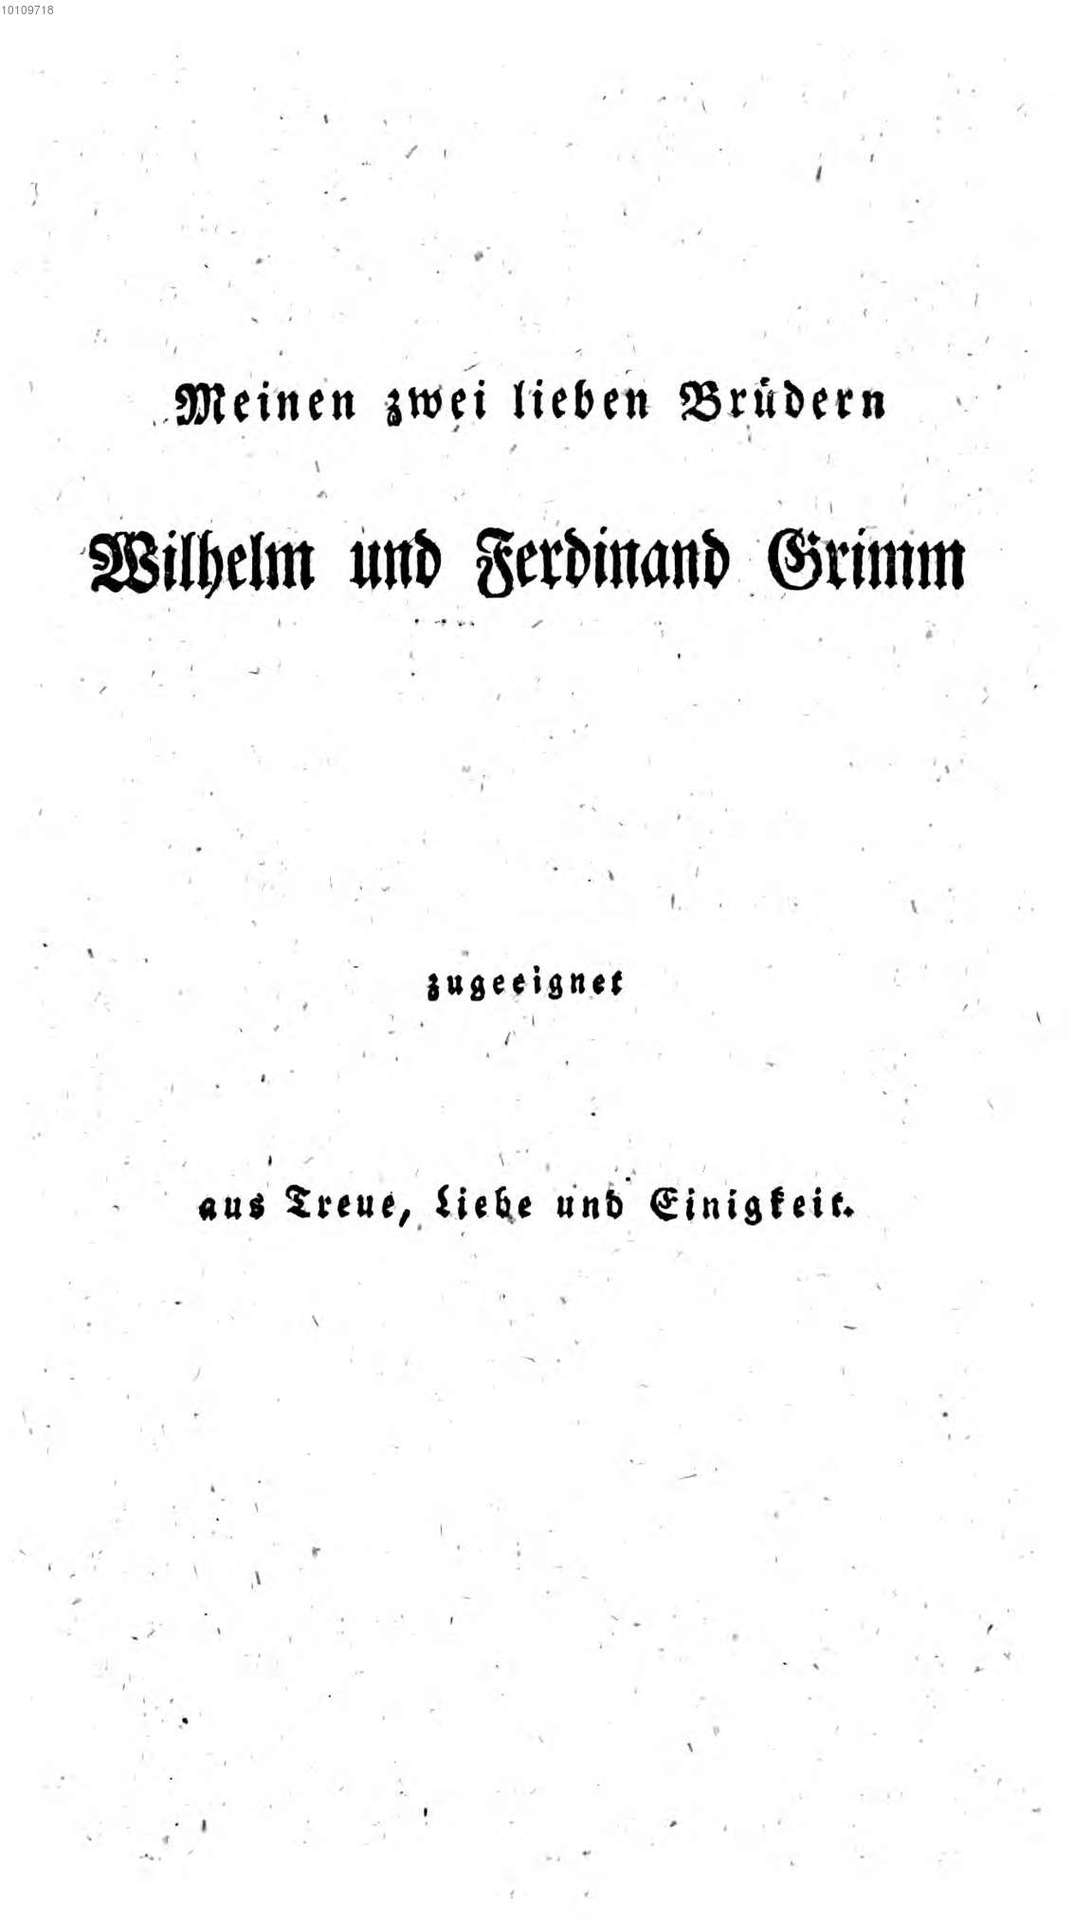 Grimm_J_-_Ueber_den_altdeutschen_Meistergesang-002.jpg